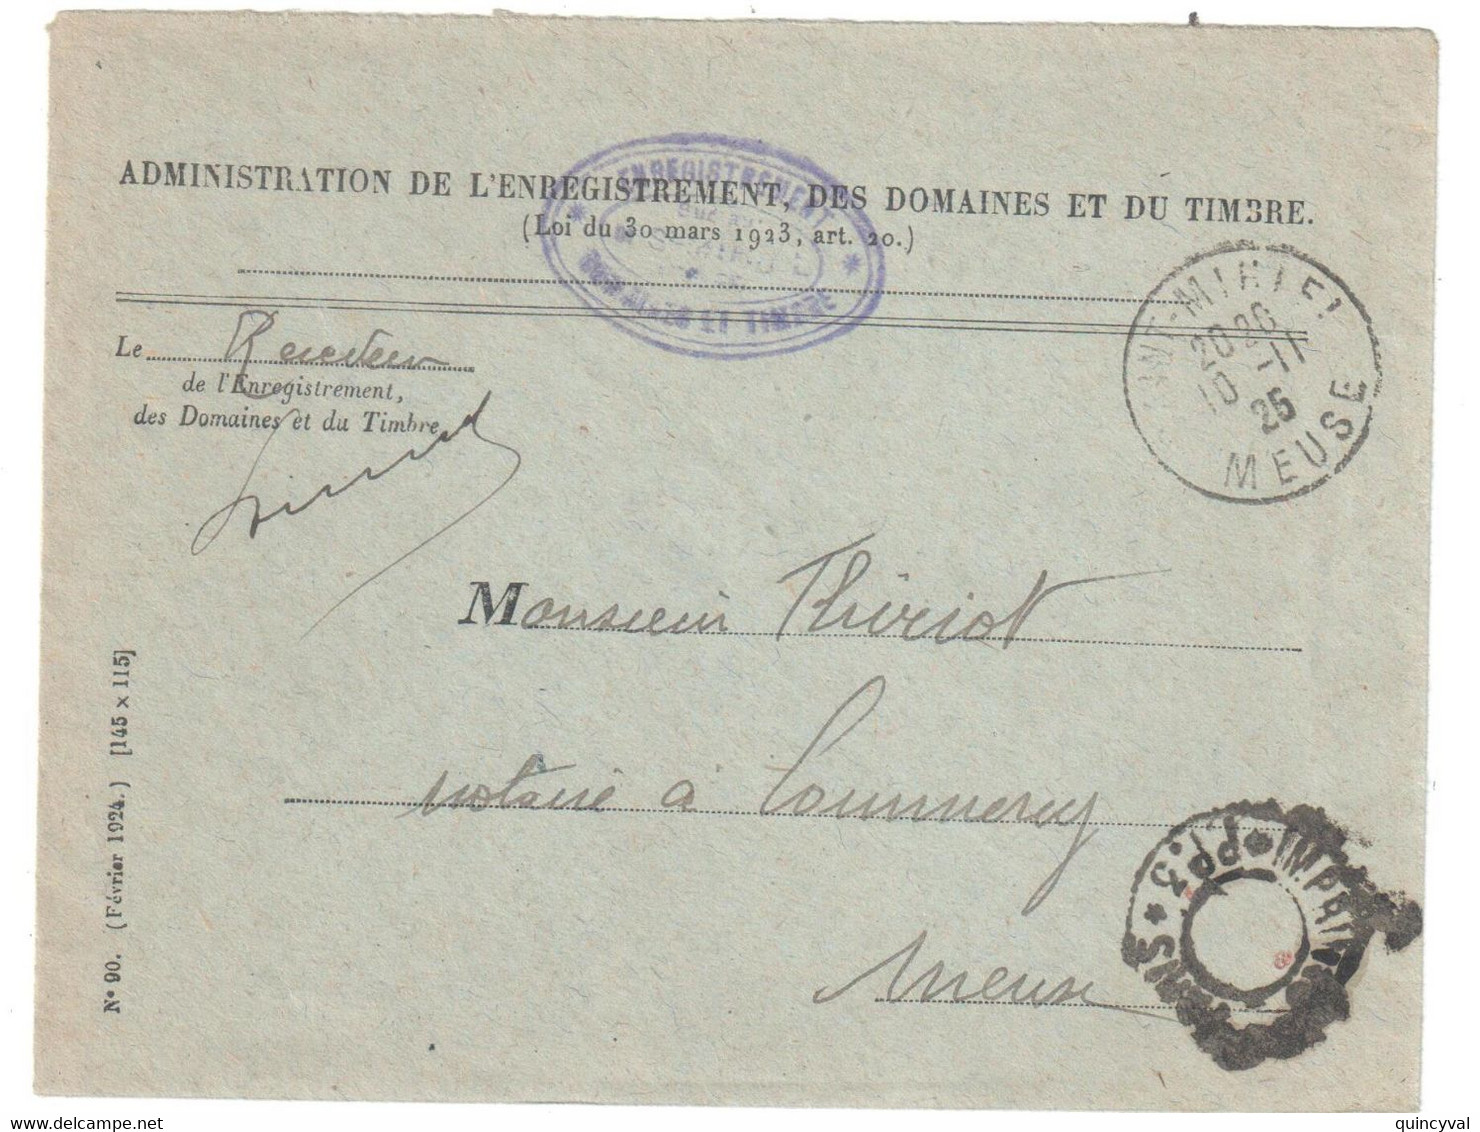 St MIHIEL Meuse Lettre Franchise Entête 1925 Enregistrement Domaines Timbres Dest Commercy Franchise Imprimés Paris PP3 - Lettere In Franchigia Civile